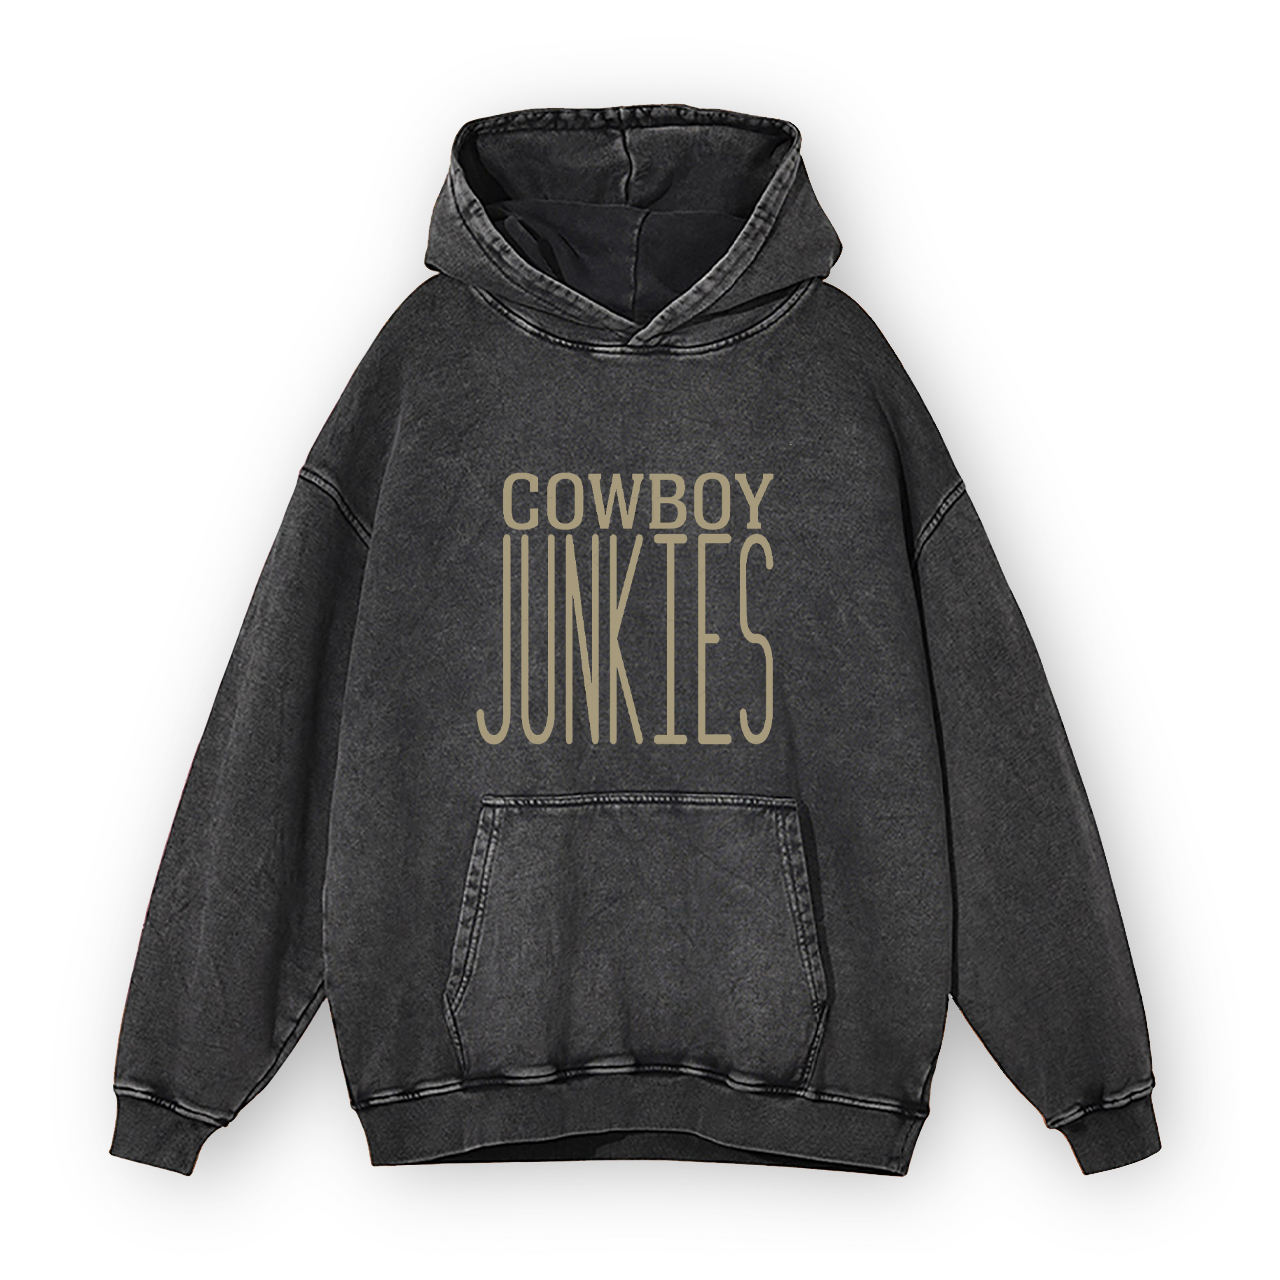 Cowboy Junkies Garment-Dye Hoodies